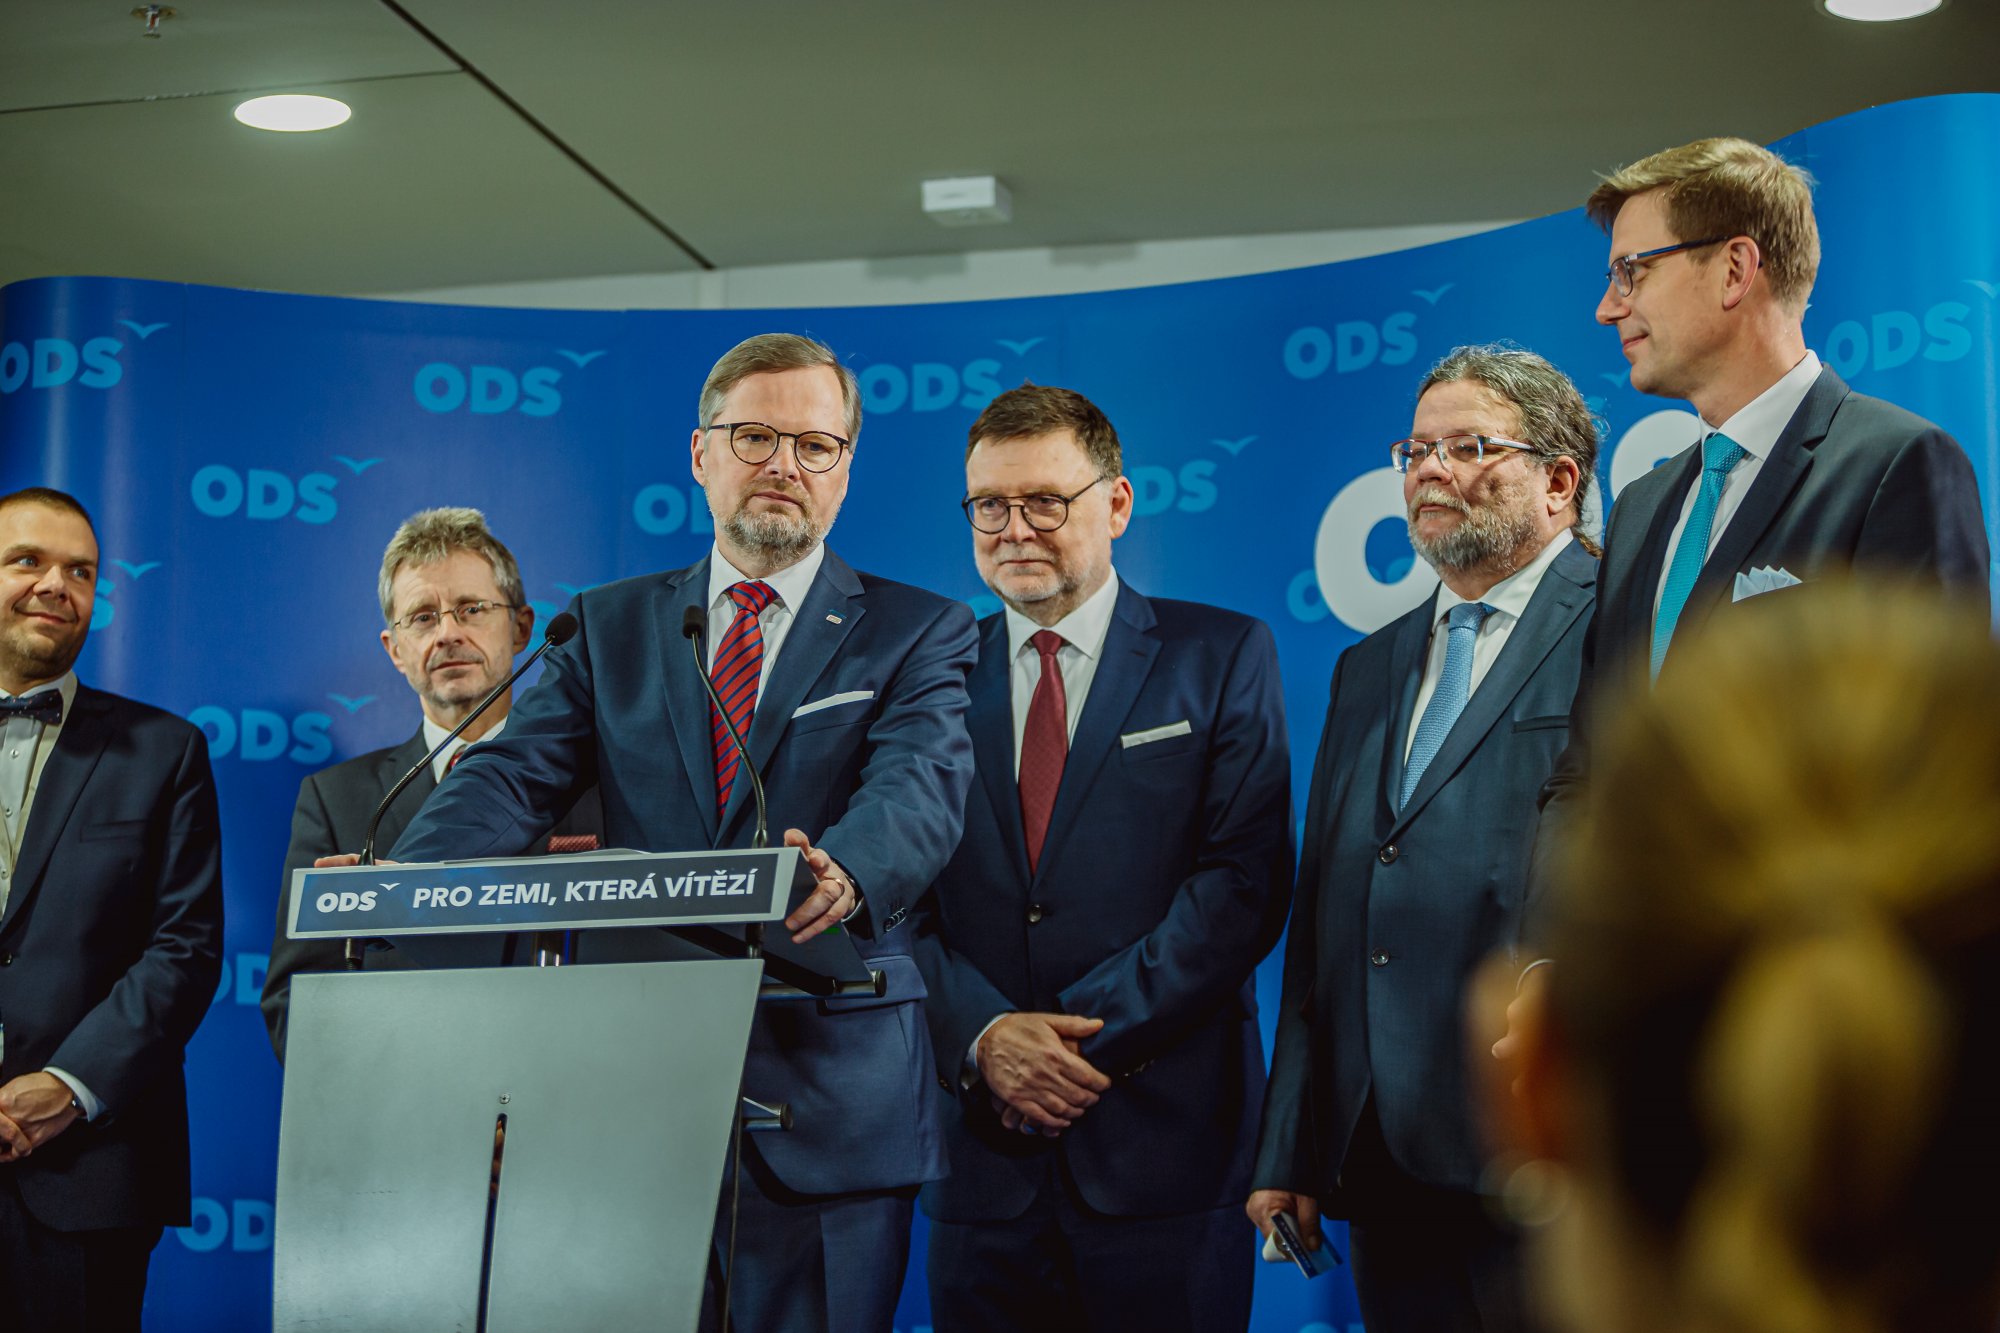 ODS: Představujeme manuál pro obnovu Česka